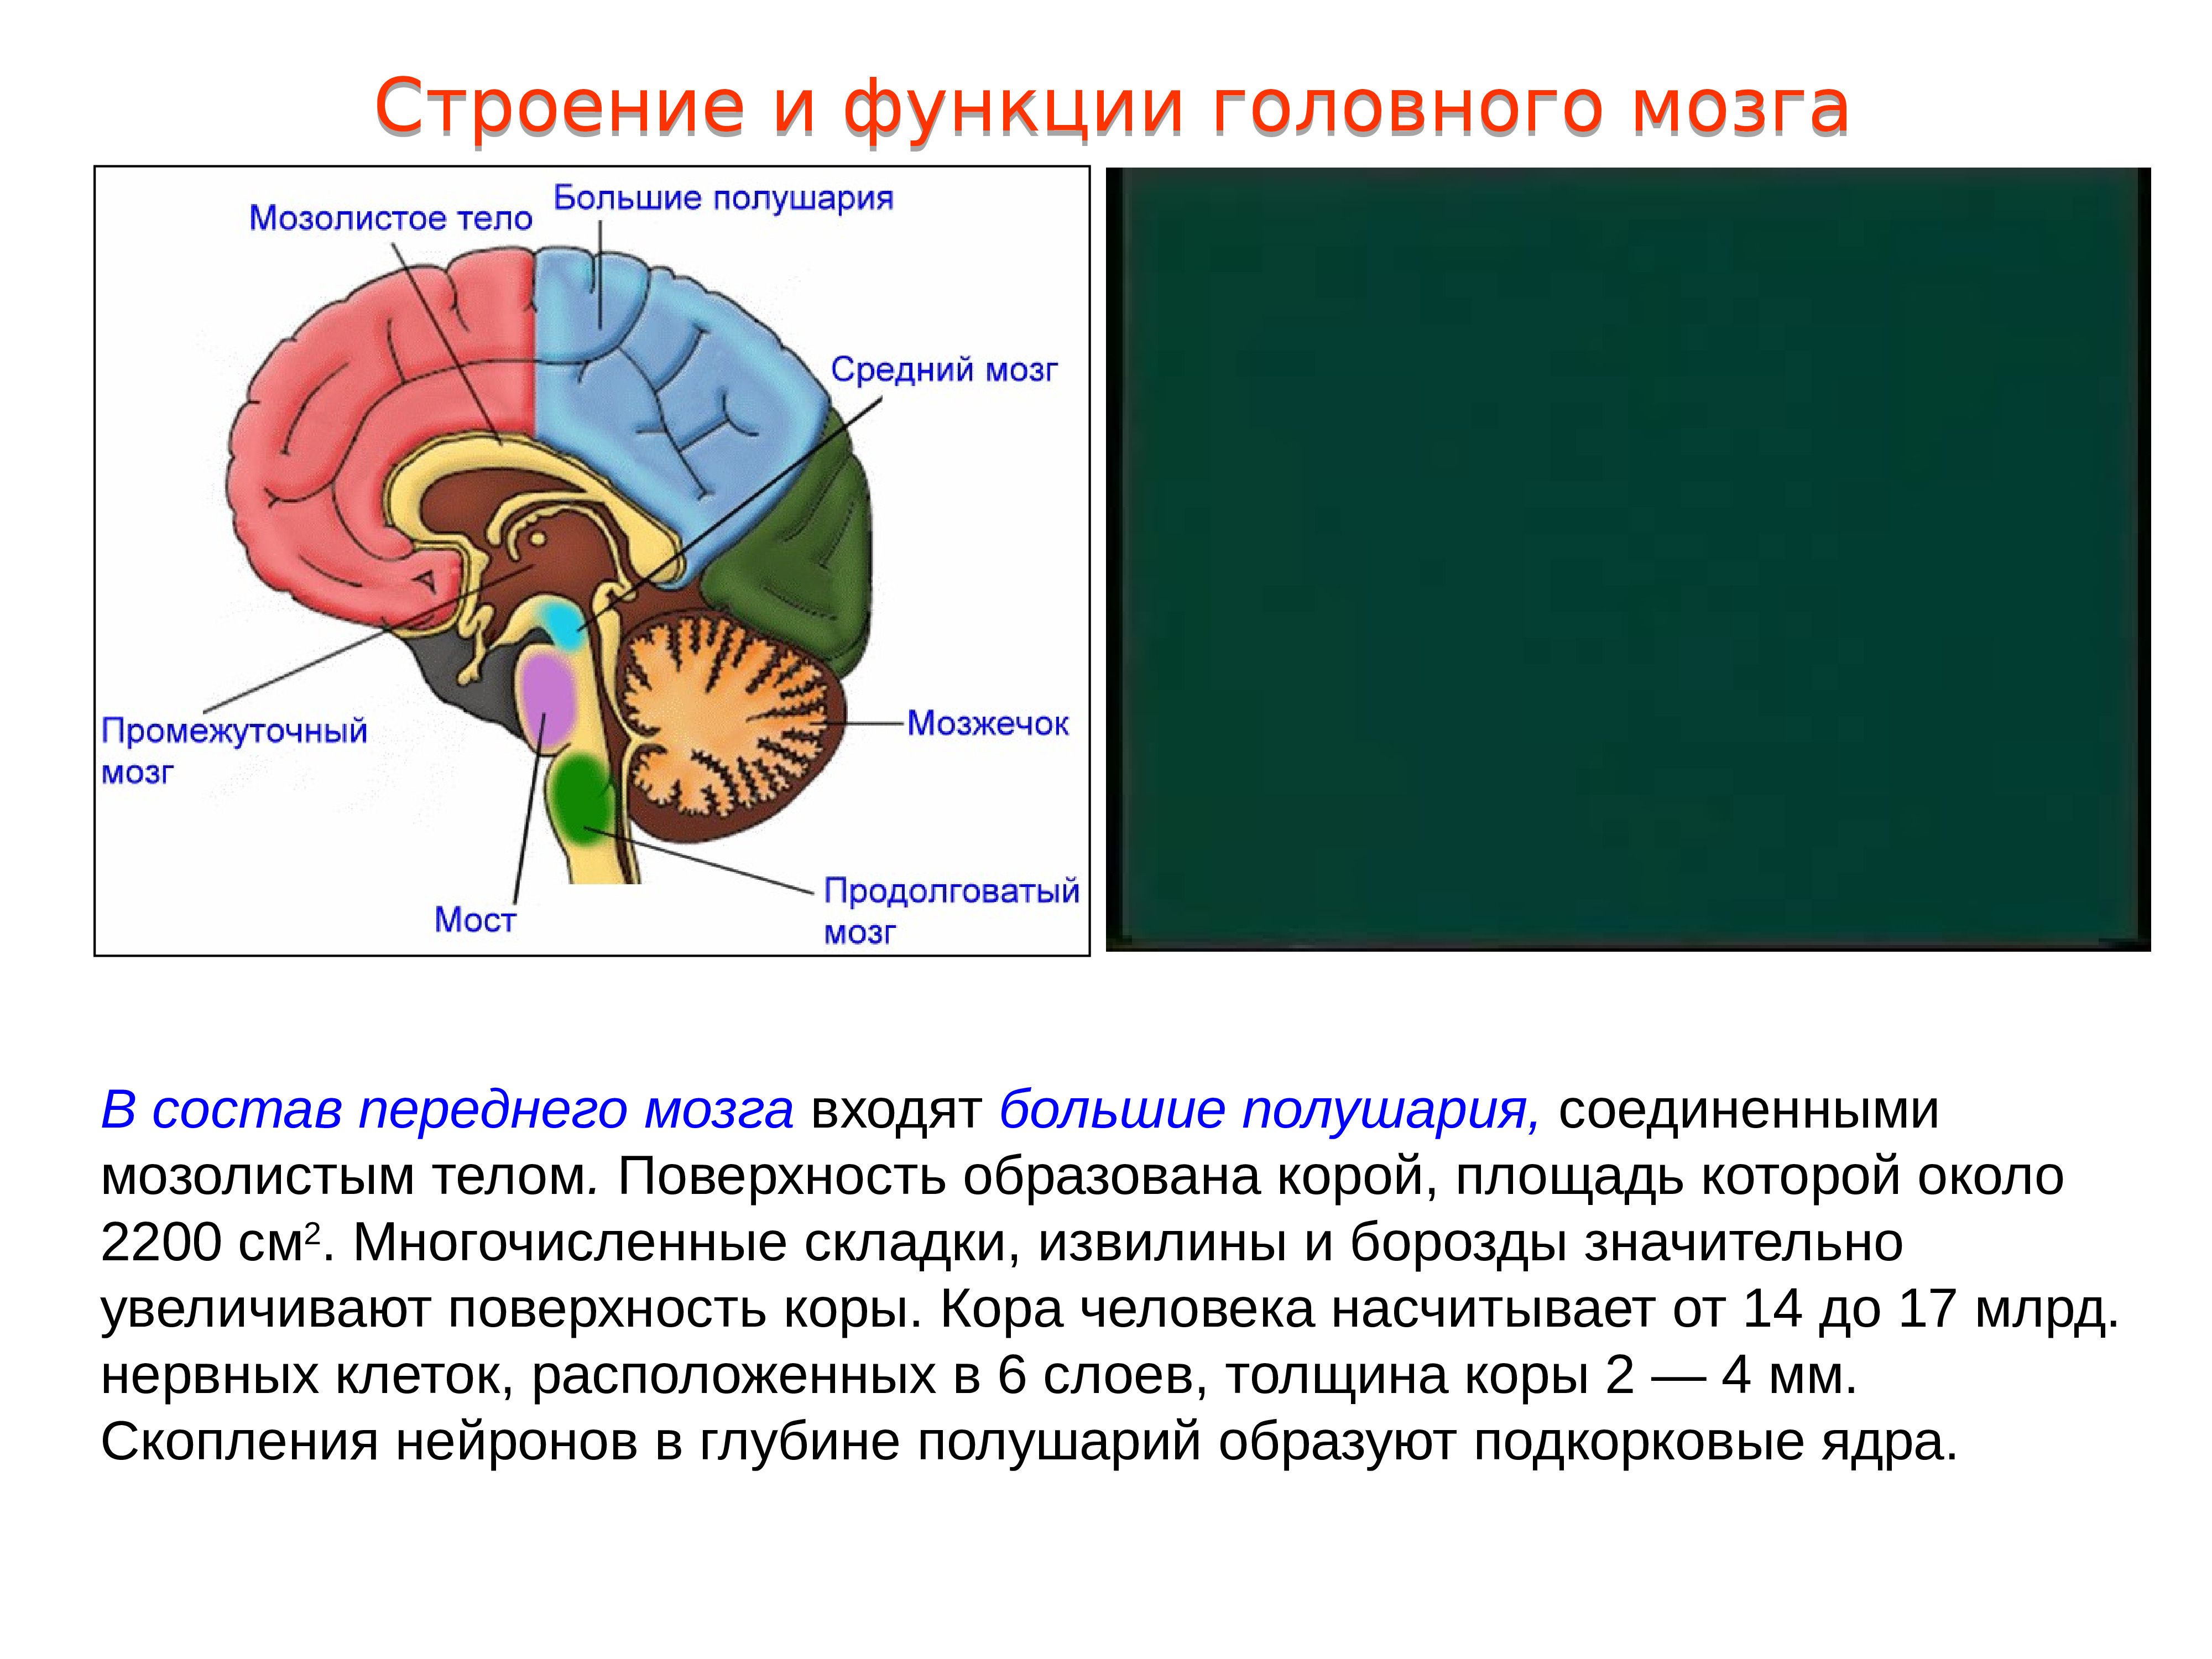 Большие полушария головного мозга функции и строение. Строение и функции больших полушарий переднего мозга. Функции промежуточного и большого полушария головного мозга. Большие полушария переднего мозга строение и функции. Строение и функции мозолистого тела головного мозга.